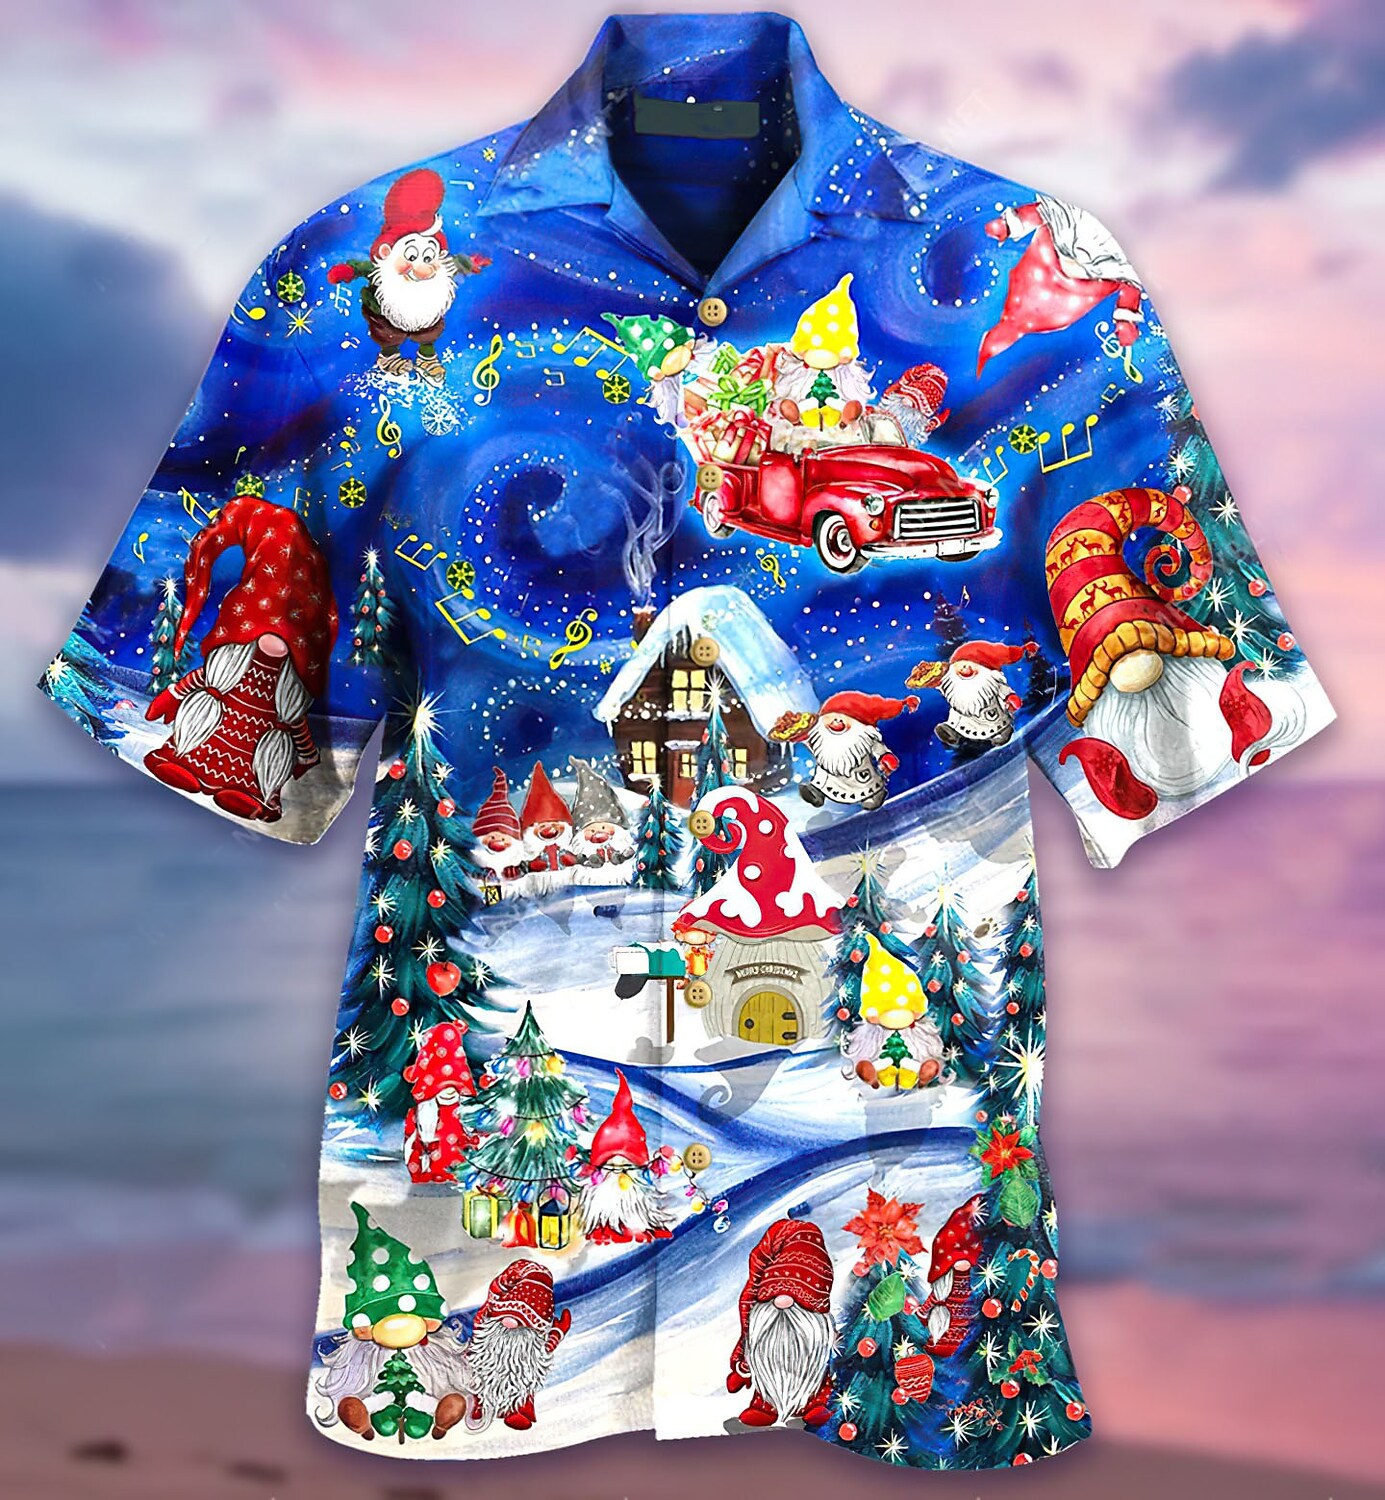 Men's T-shirt 3D Print Floral Santa Claus Graphics Hawaii Vacation Shirts